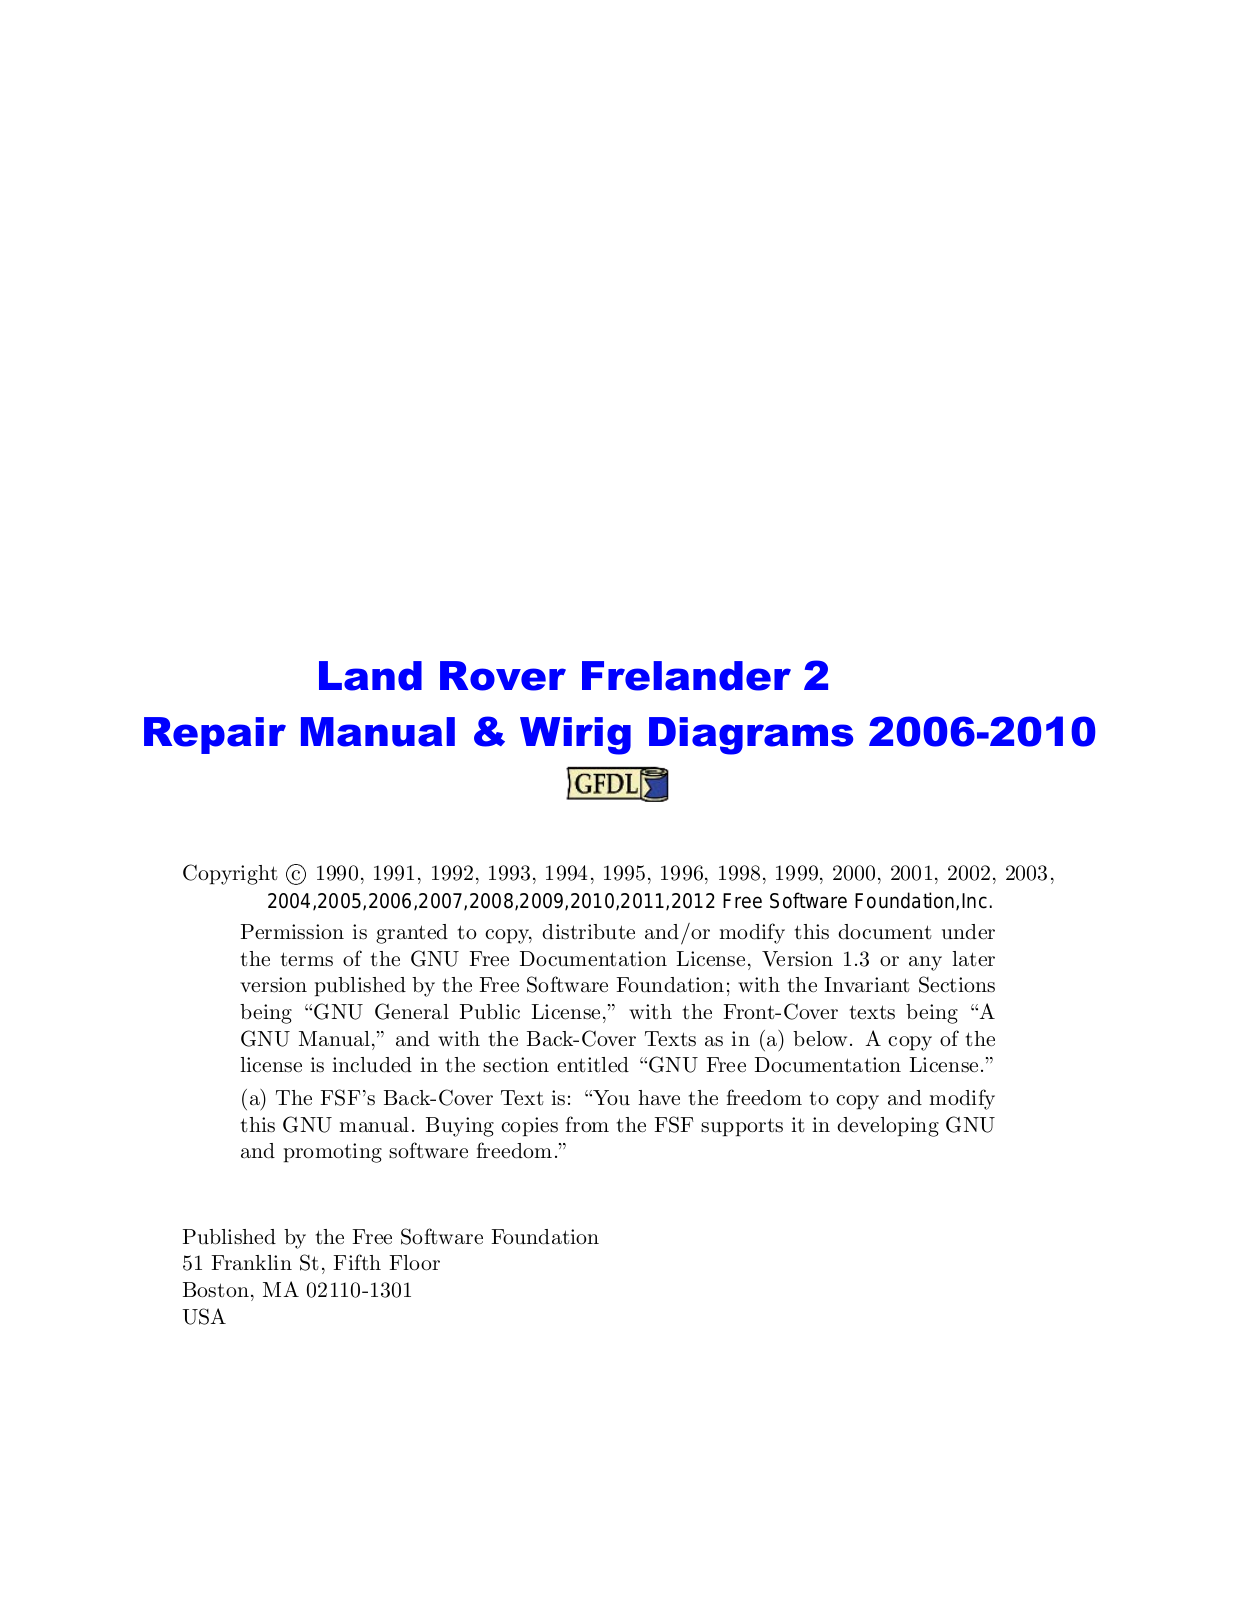 Land Rover Freelander 2008, Freelander 2009, Freelander 2010, Freelander 2 2006, Freelander 2 2007 User Manual